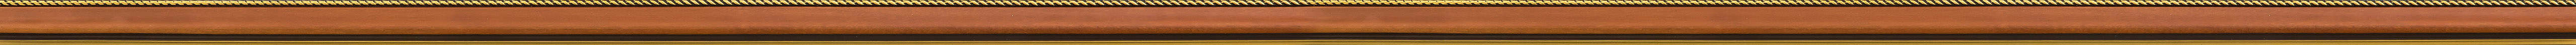 Καρυδί κορνίζα με χρυσή πλεξούδα frame